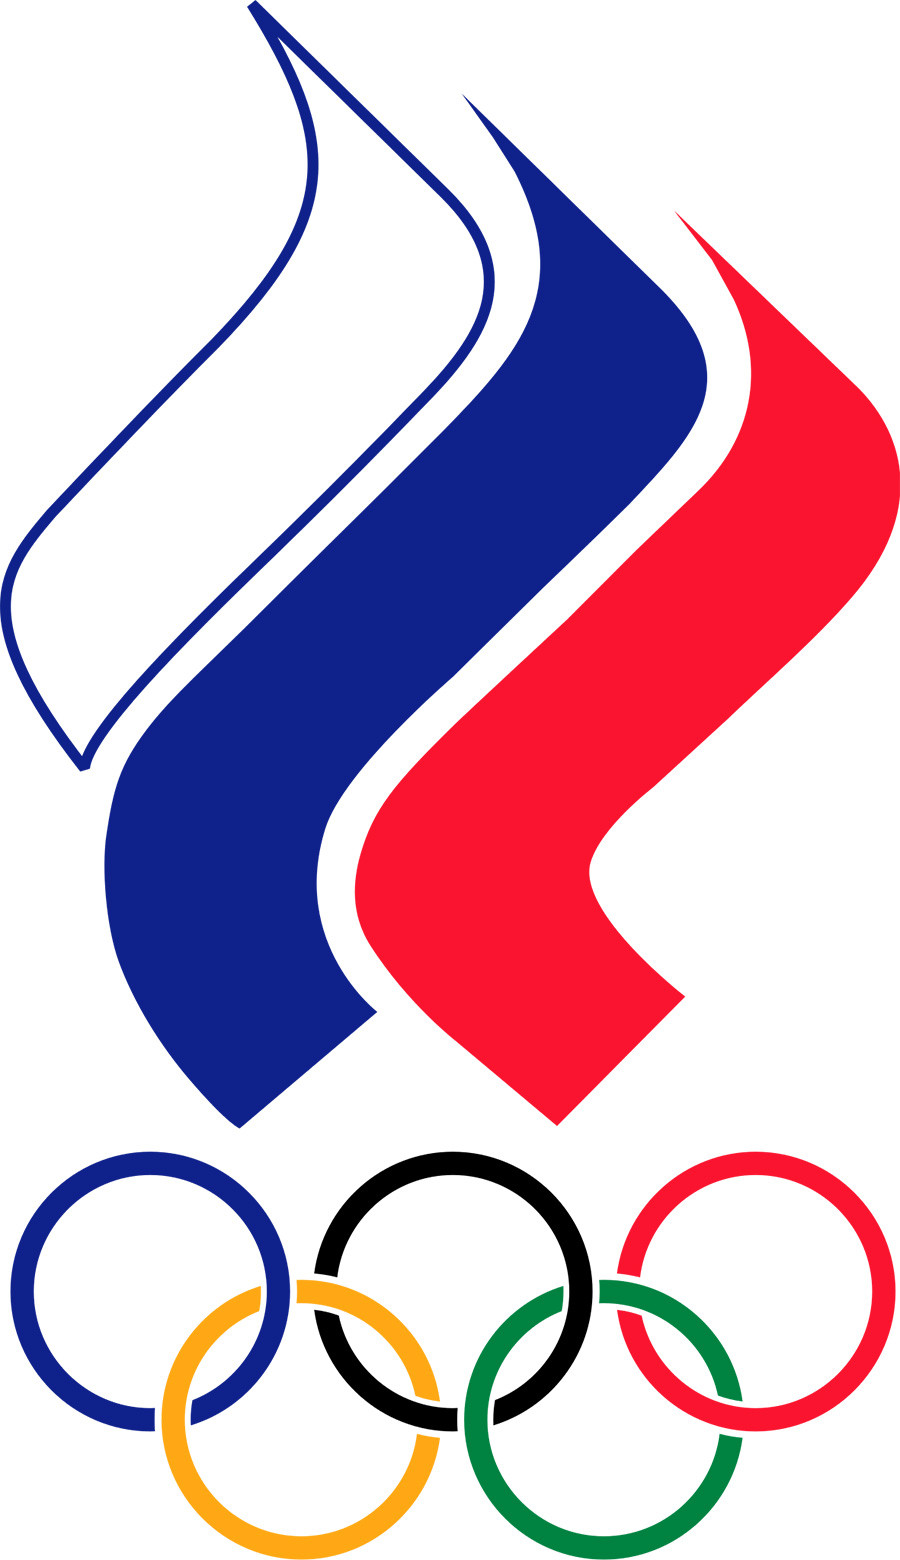 Das Emblem des Russischen Olympischen Komitees.